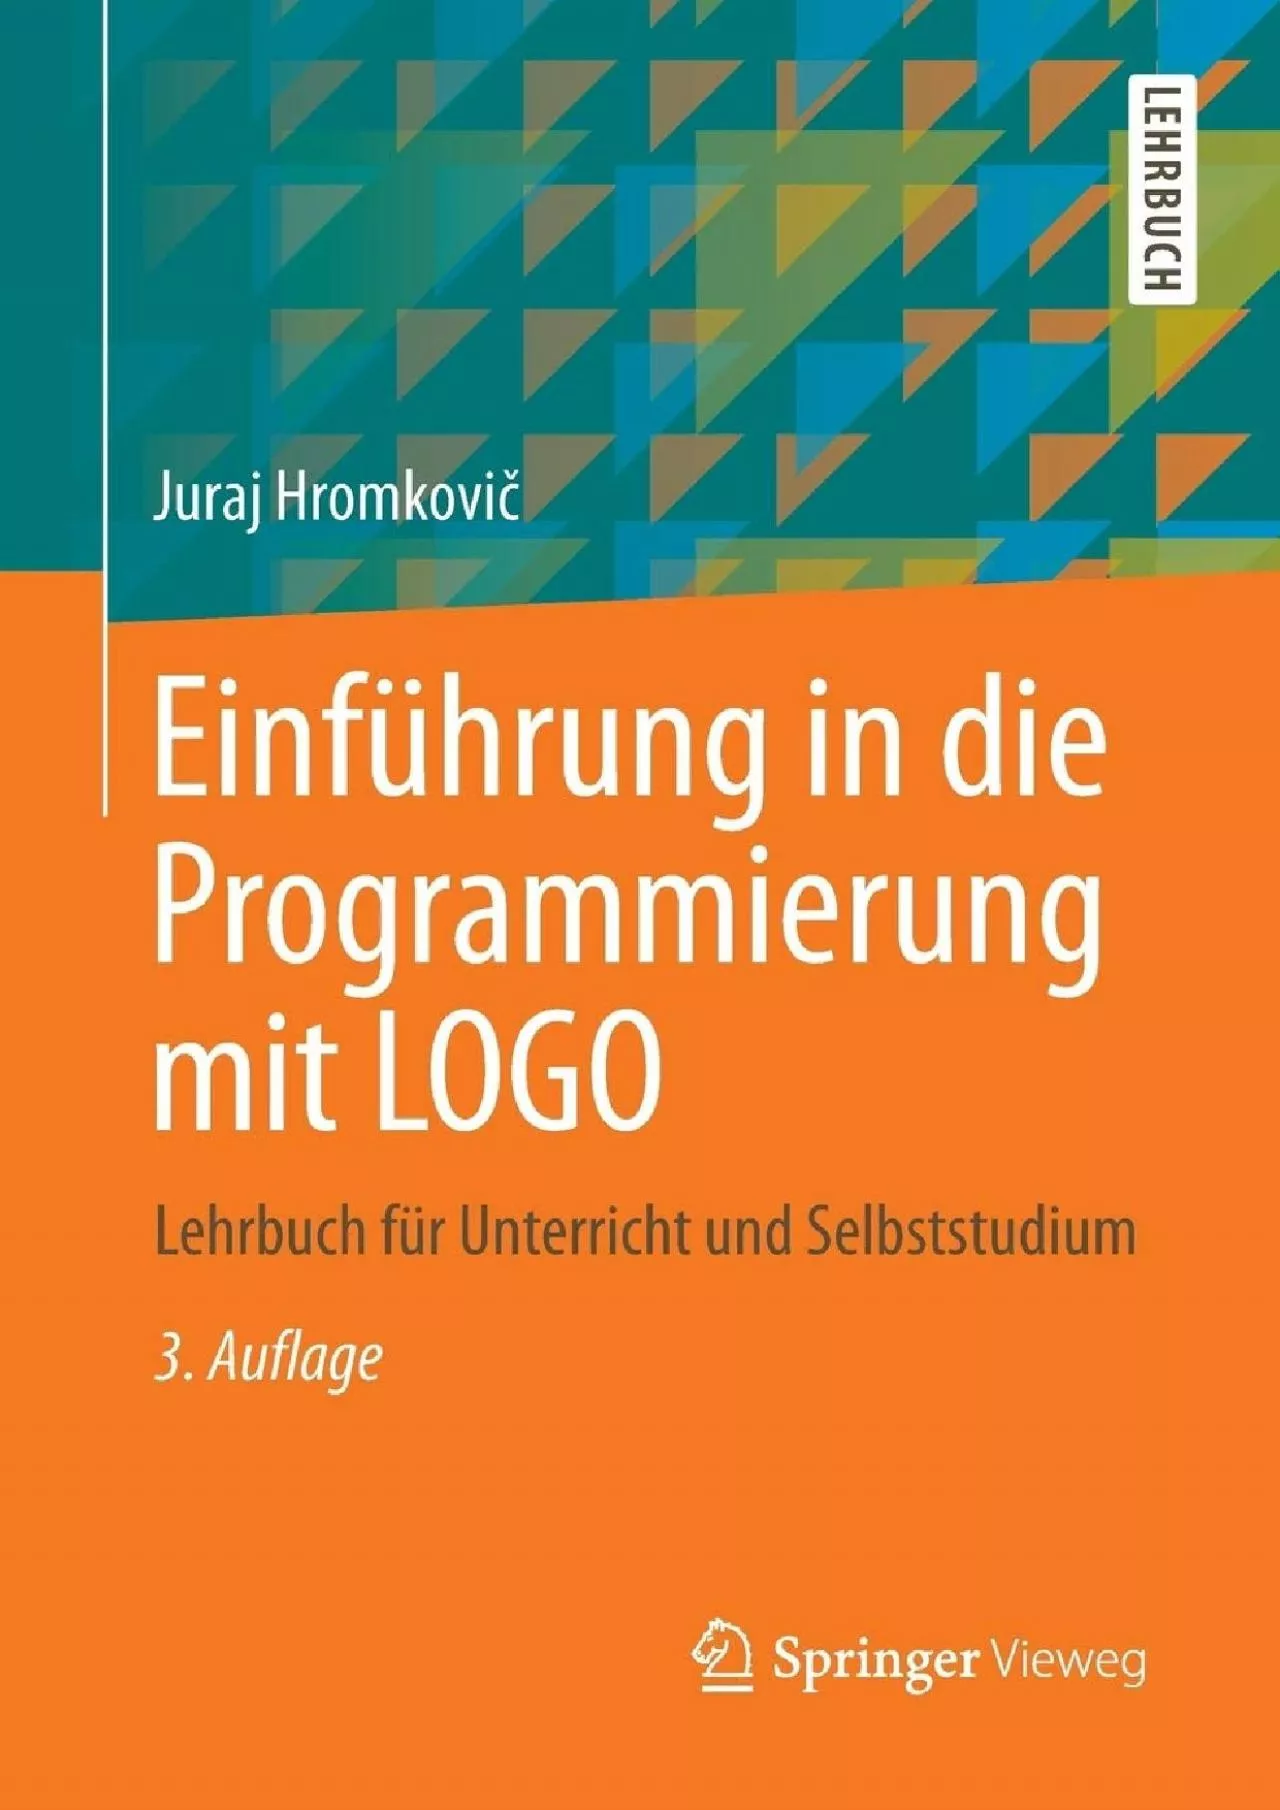 [READ]-Einführung in die Programmierung mit LOGO: Lehrbuch für Unterricht und Selbststudium